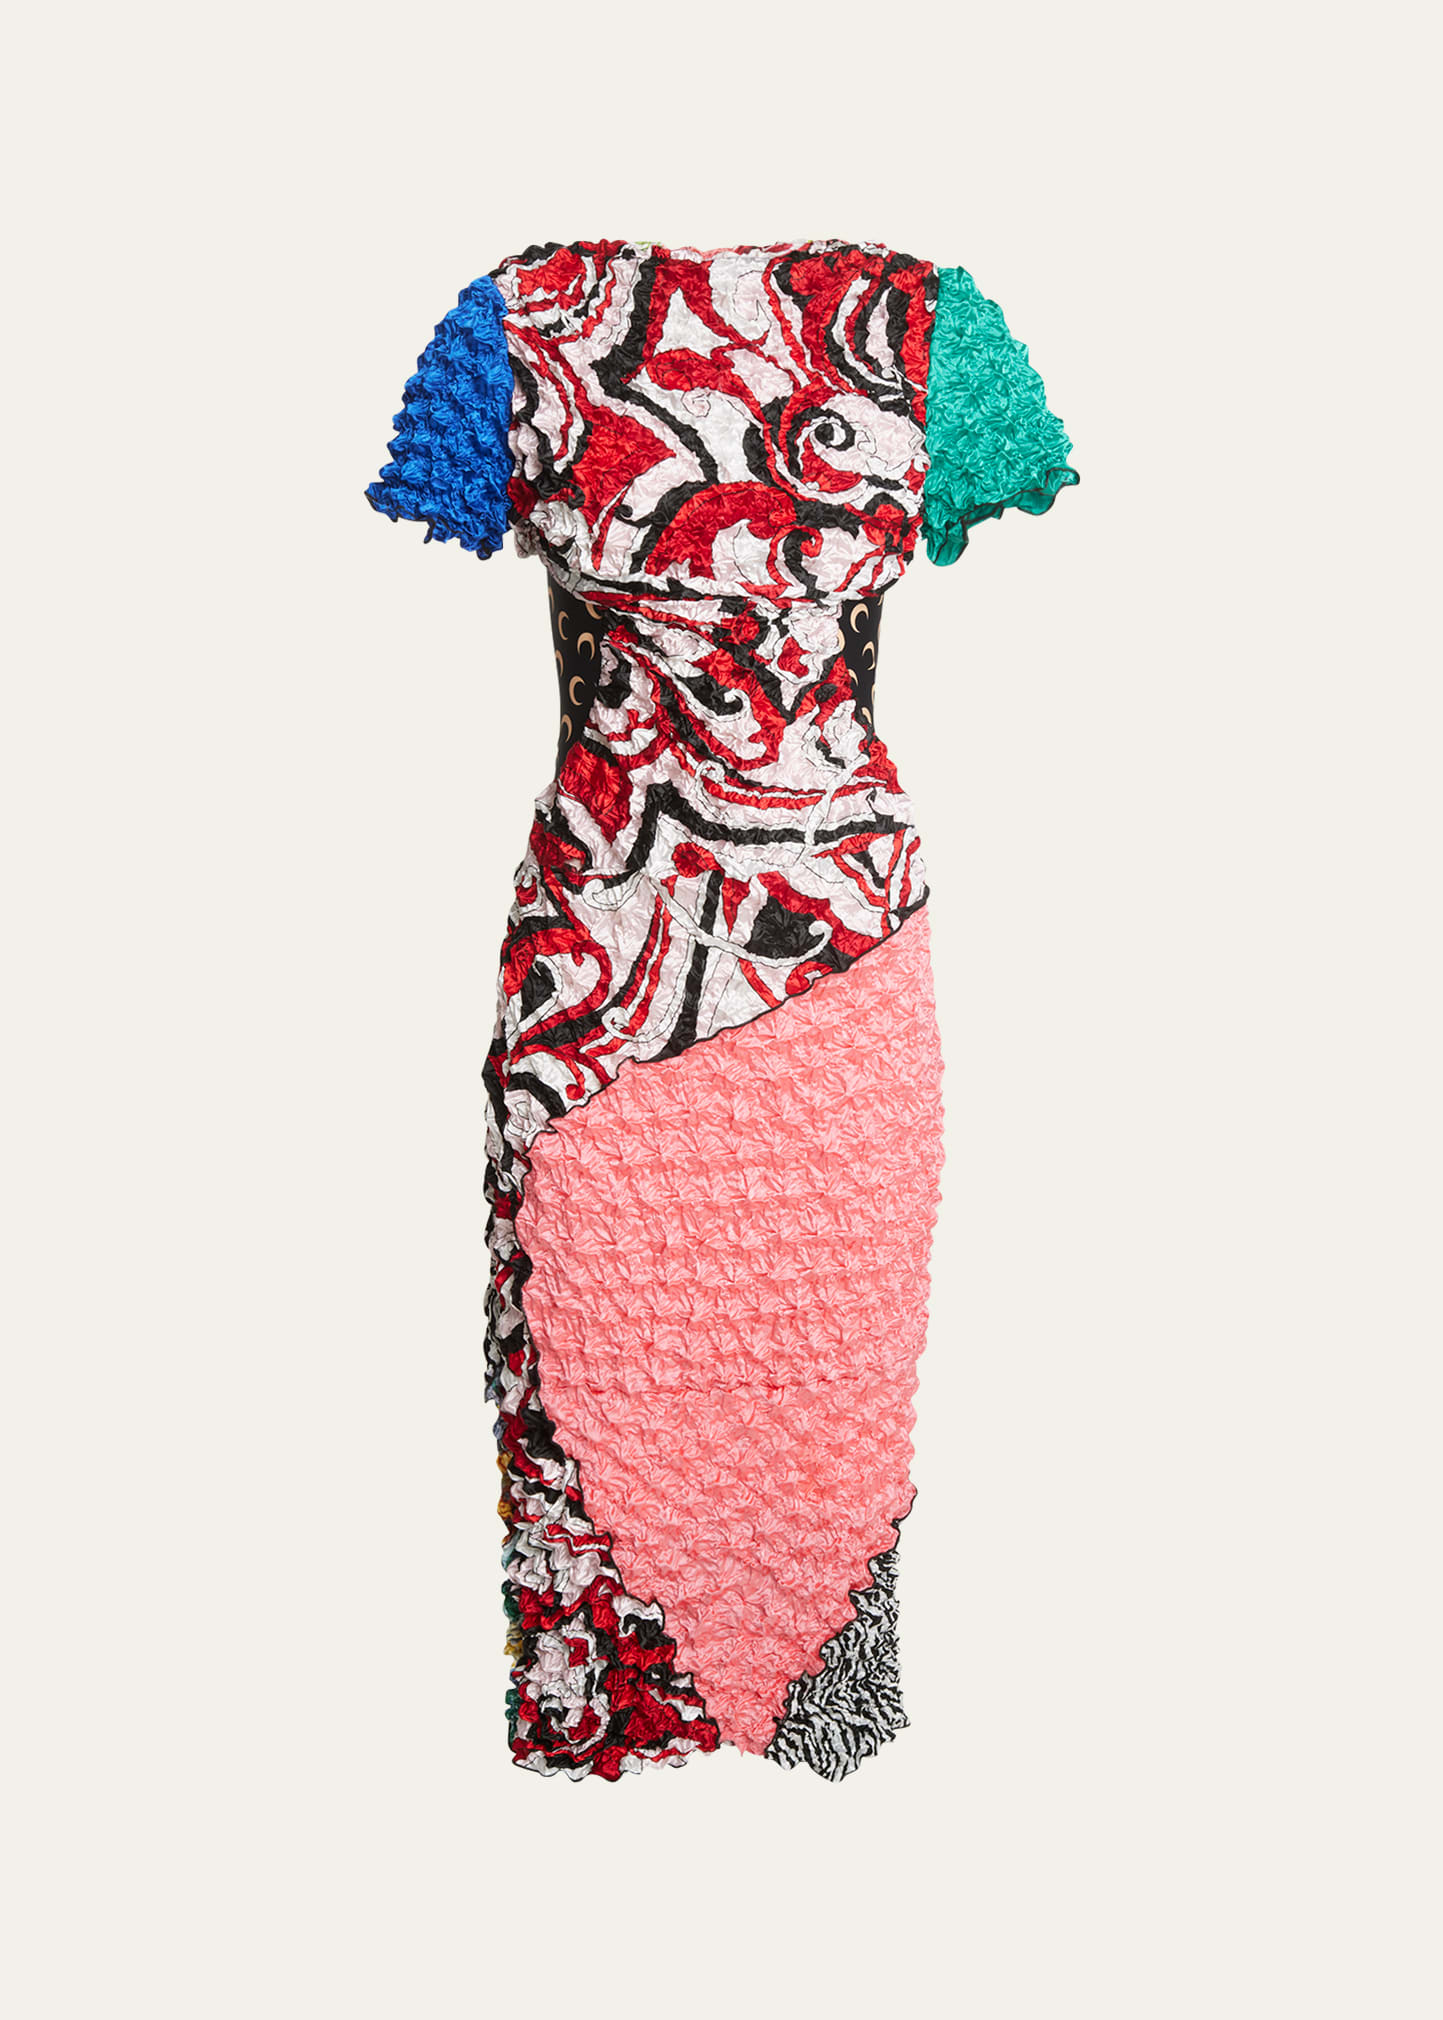 Marine Serre Regenerated Pop-corn Mixed-print Midi Dress In It99 Inverse Tan